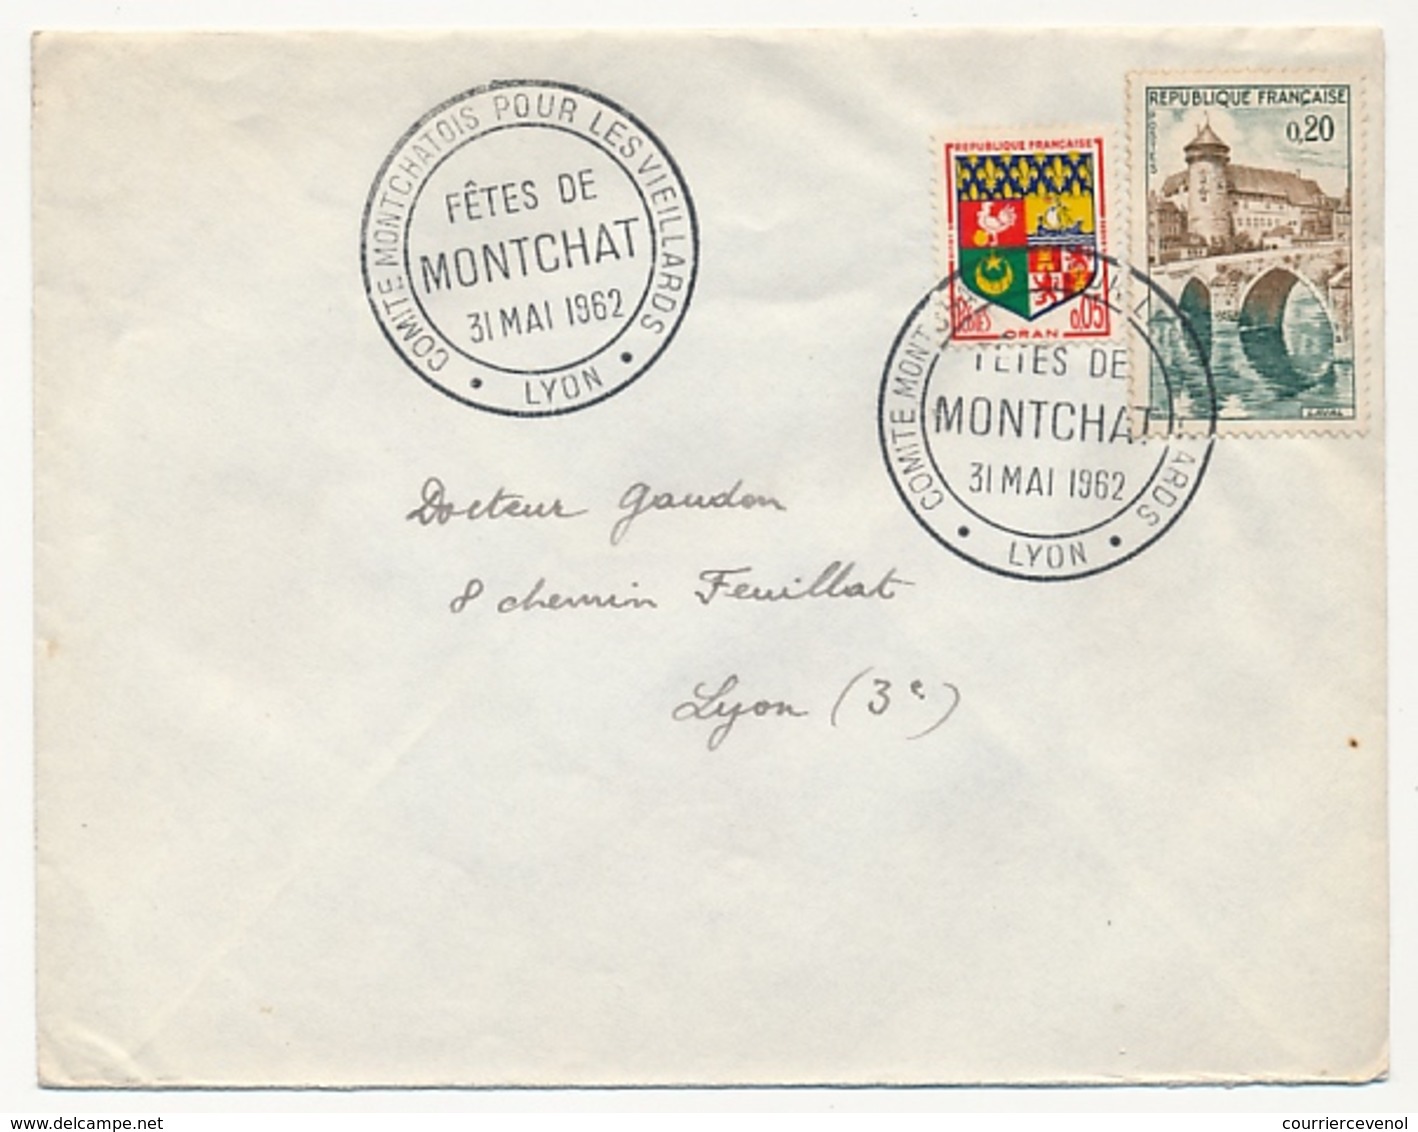 FRANCE - Enveloppe Affr Composé - Fêtes De Montchat (LYON) 1962 - Cachets Commémoratifs